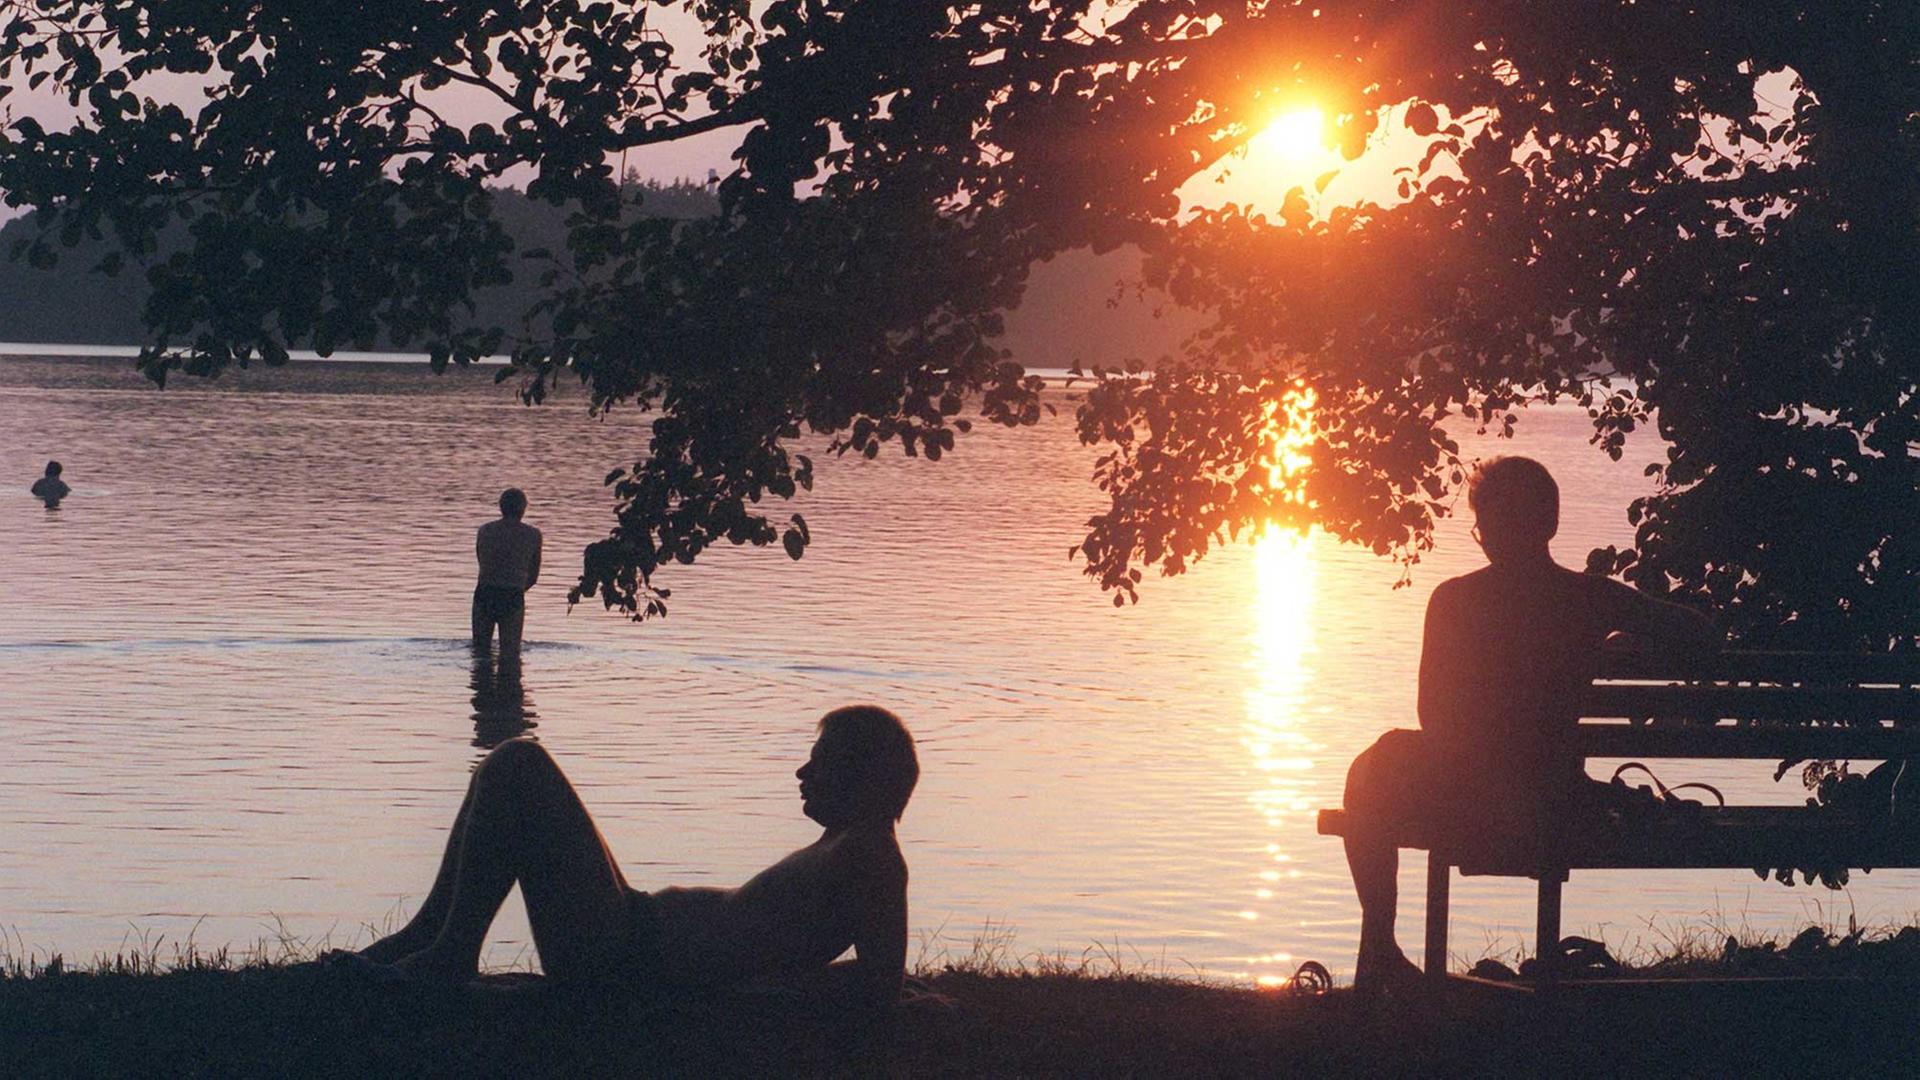 Am Stechlinsee geht die Sonne unter, ein Mensch sitzt am Ufer auf der Bank, einer liegt auf dem Rasen, einer steht im Wasser